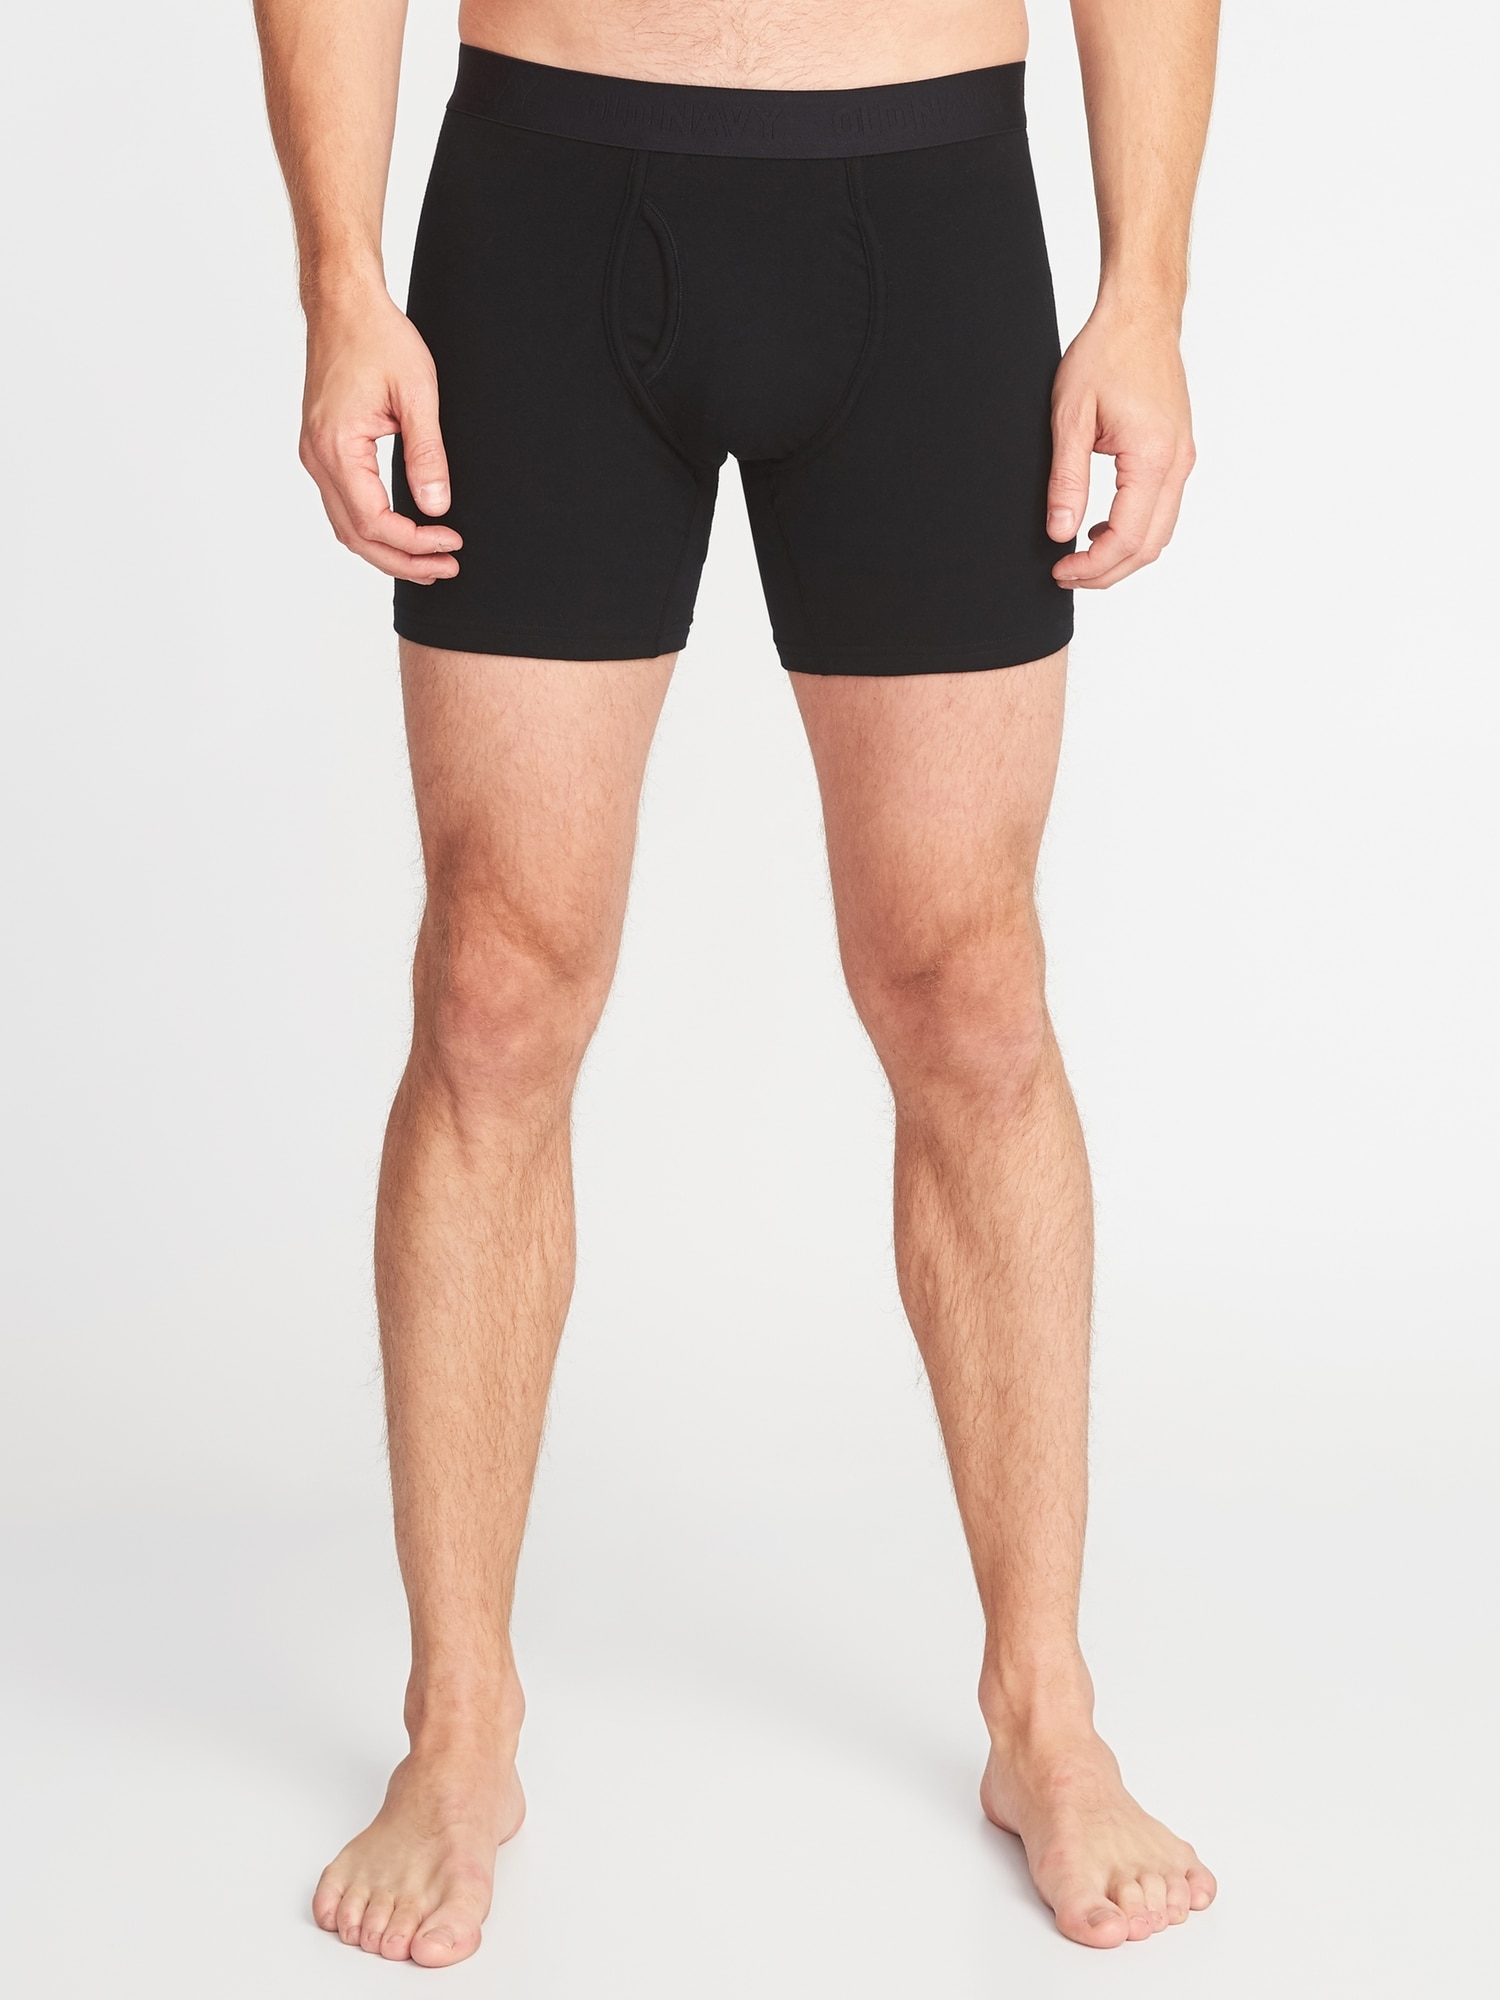 Soft-Washed Built-In Flex Boxer-Briefs Underwear 5-Pack for Men -- 6.25 ...